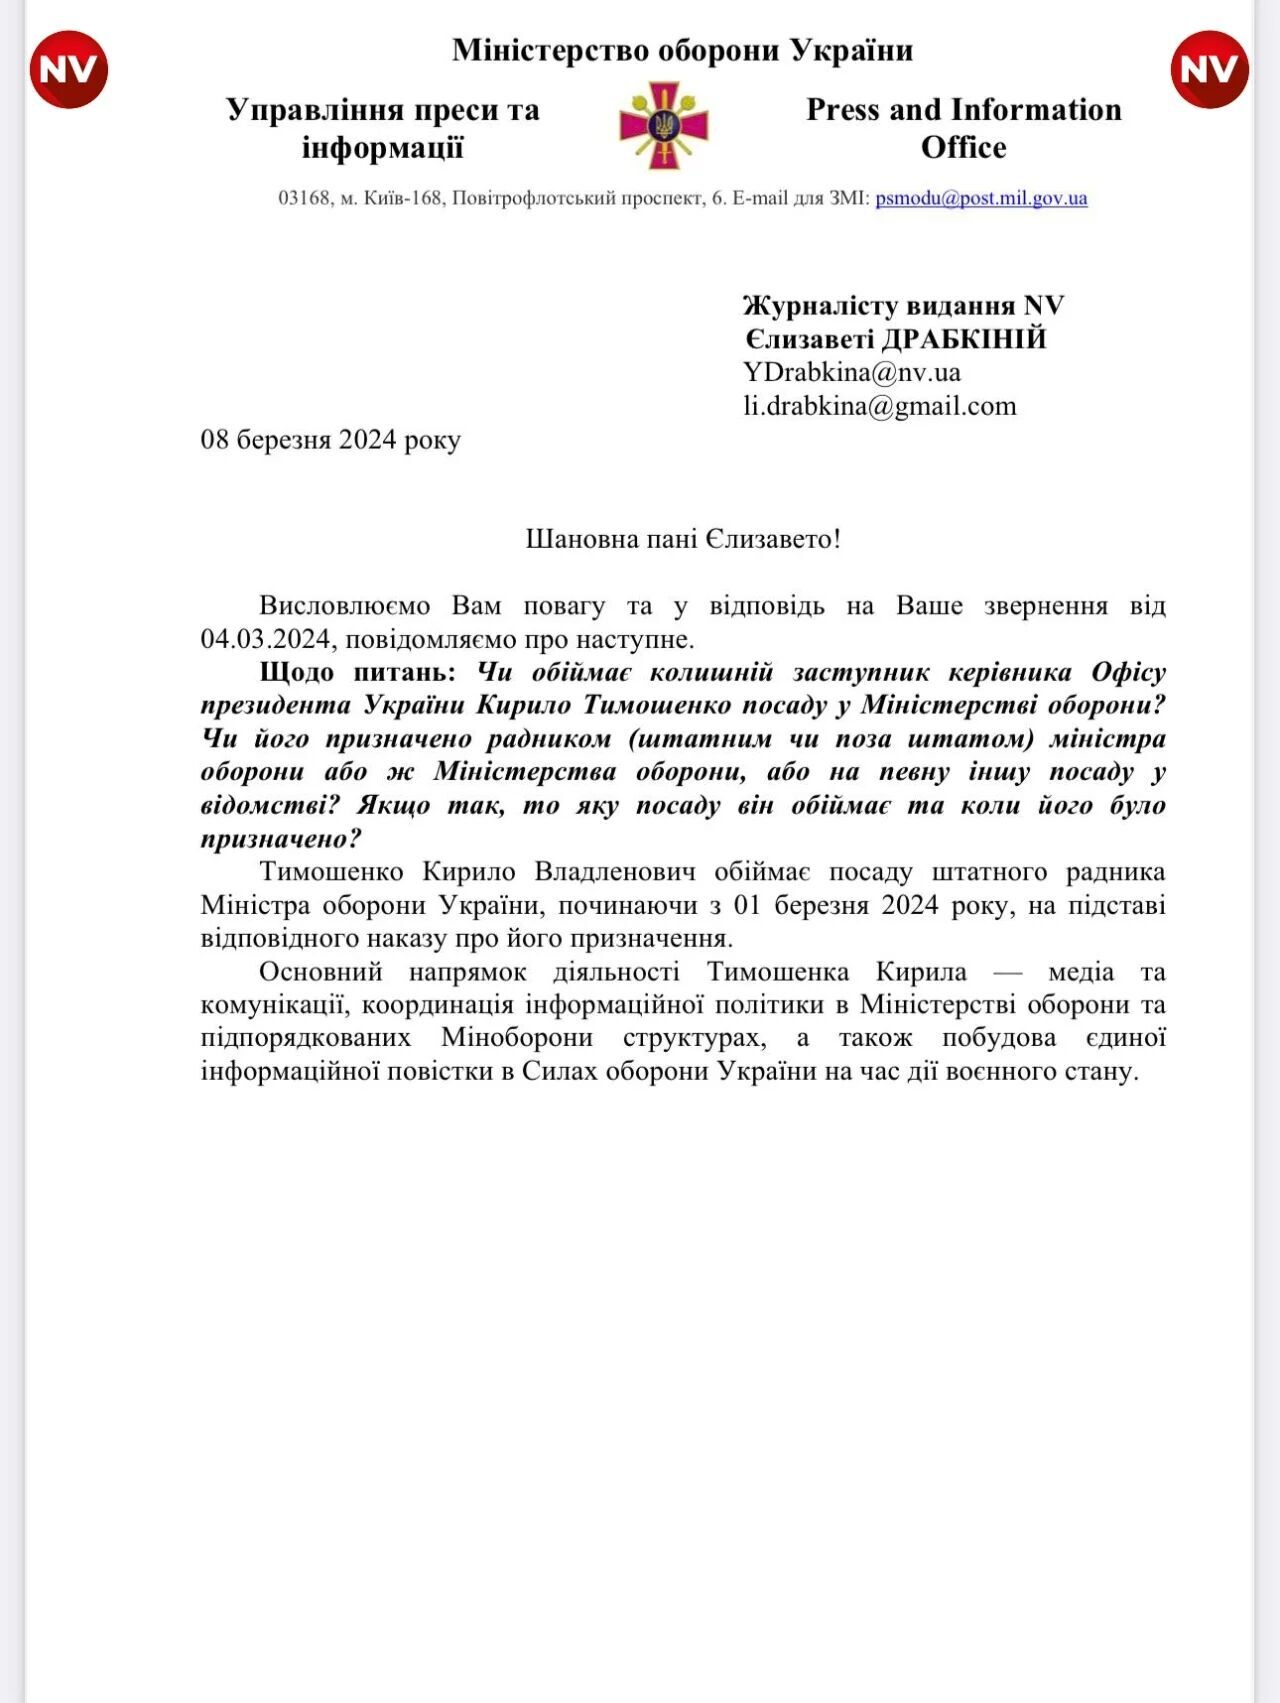 Тимошенко стал штатным советником министра обороны Умерова: все подробности